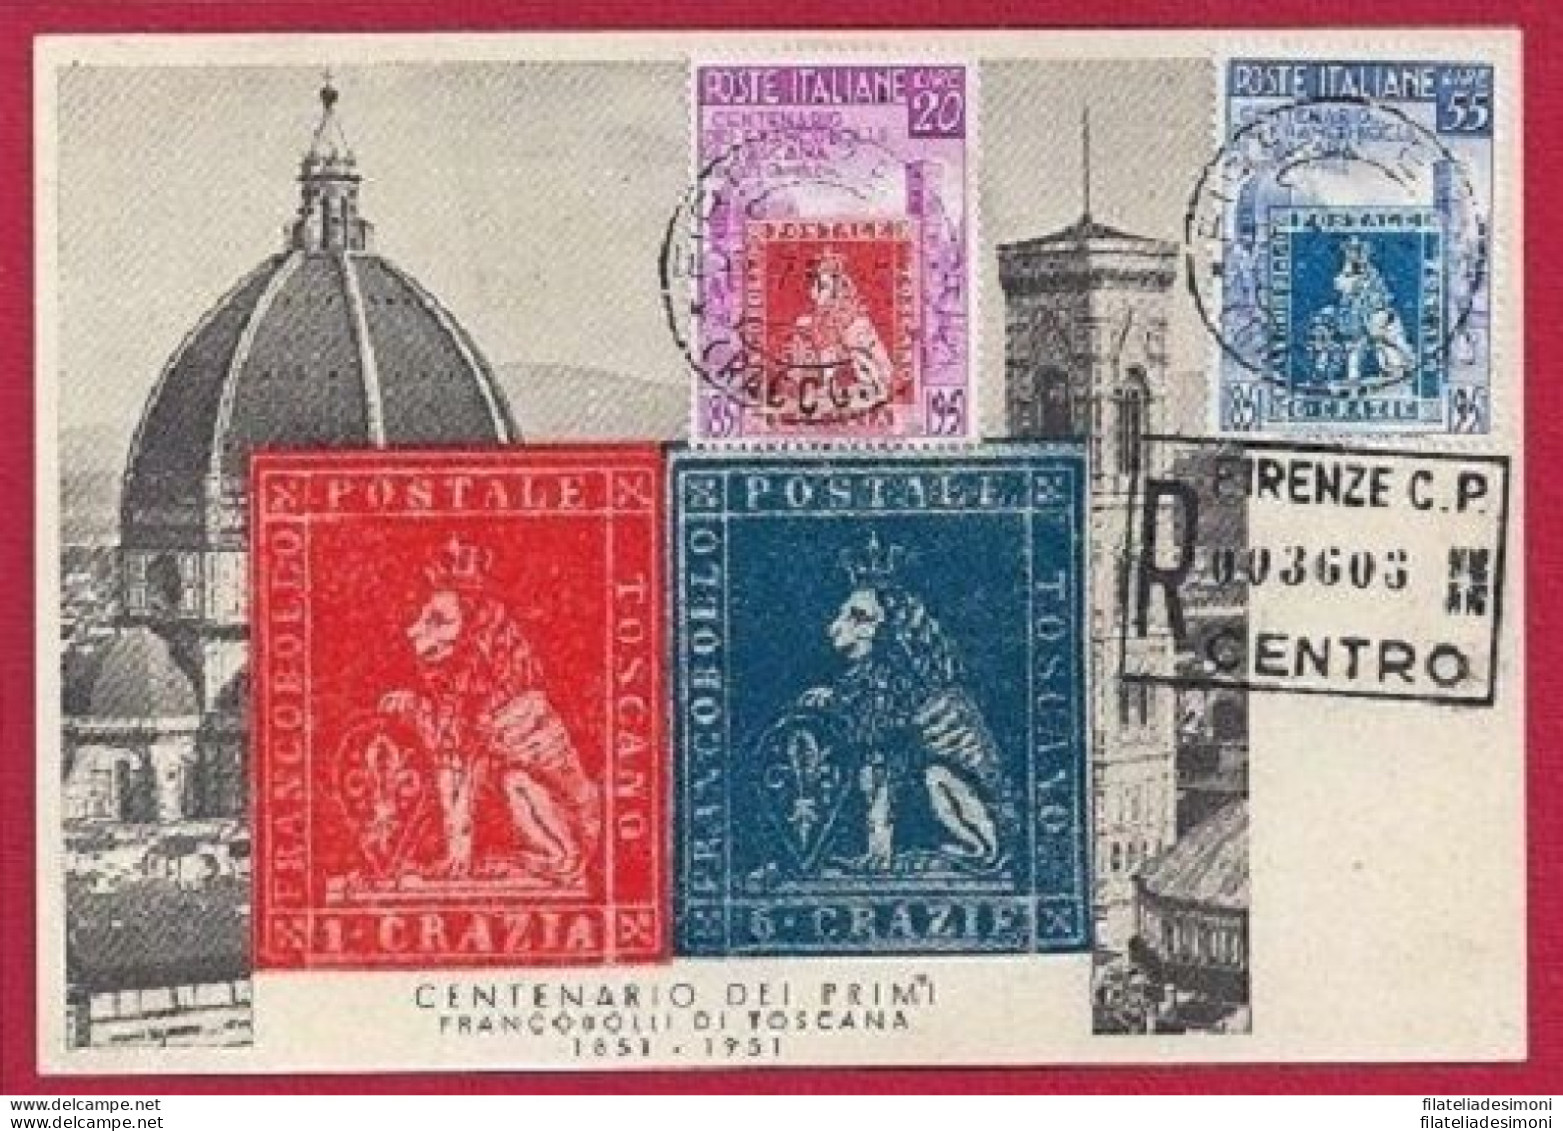 1951 100° Francobolli Di Toscana N° 653-654 Su Cartolina Annullo Firenze - Europe